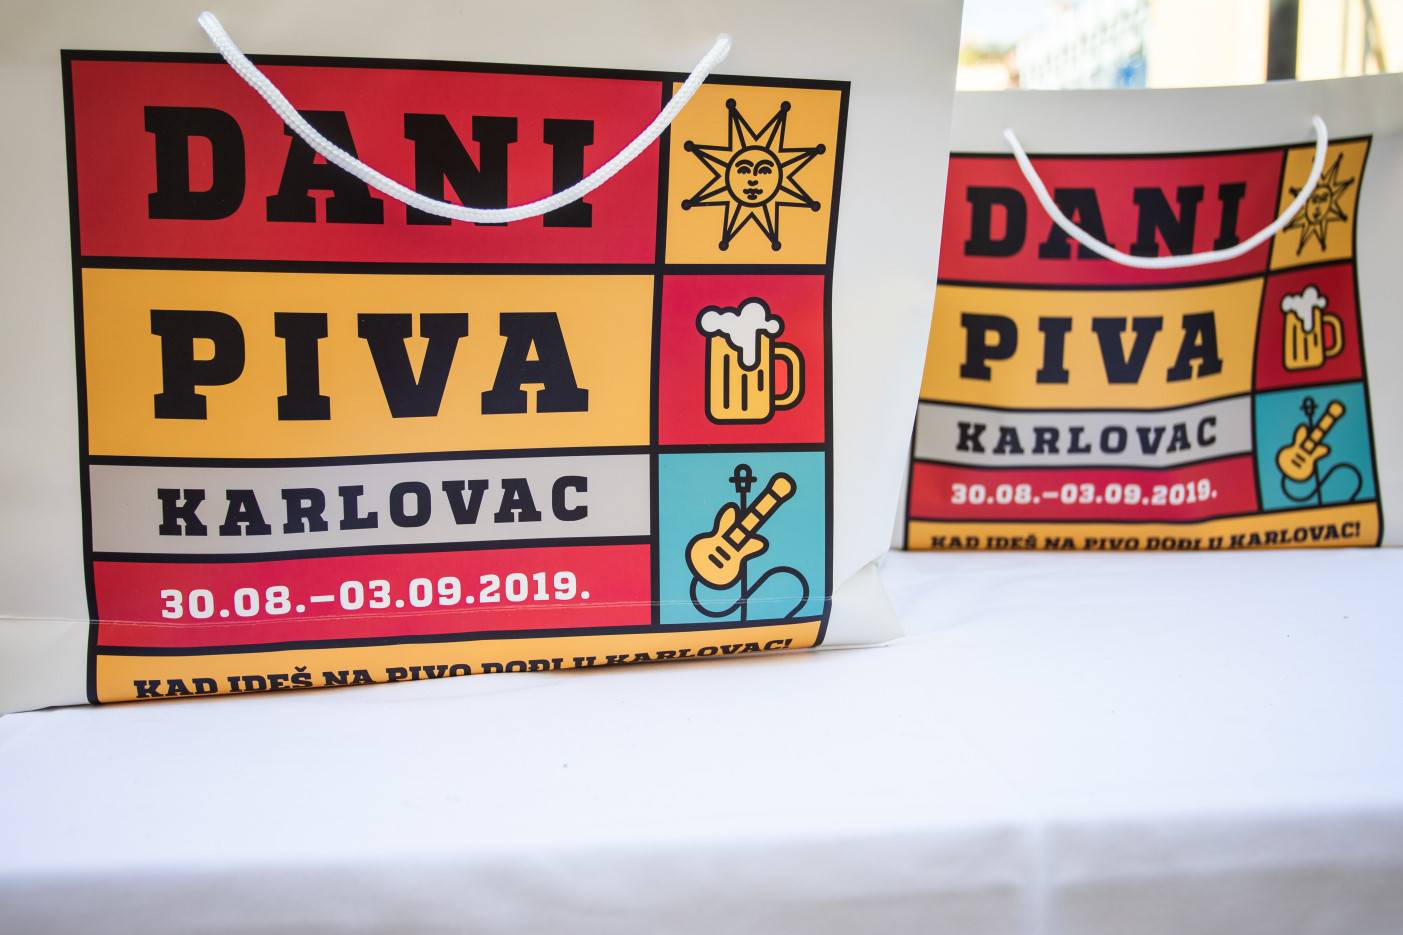 Započelo odbrojavanje do tradicionalnih Dana piva Karlovac